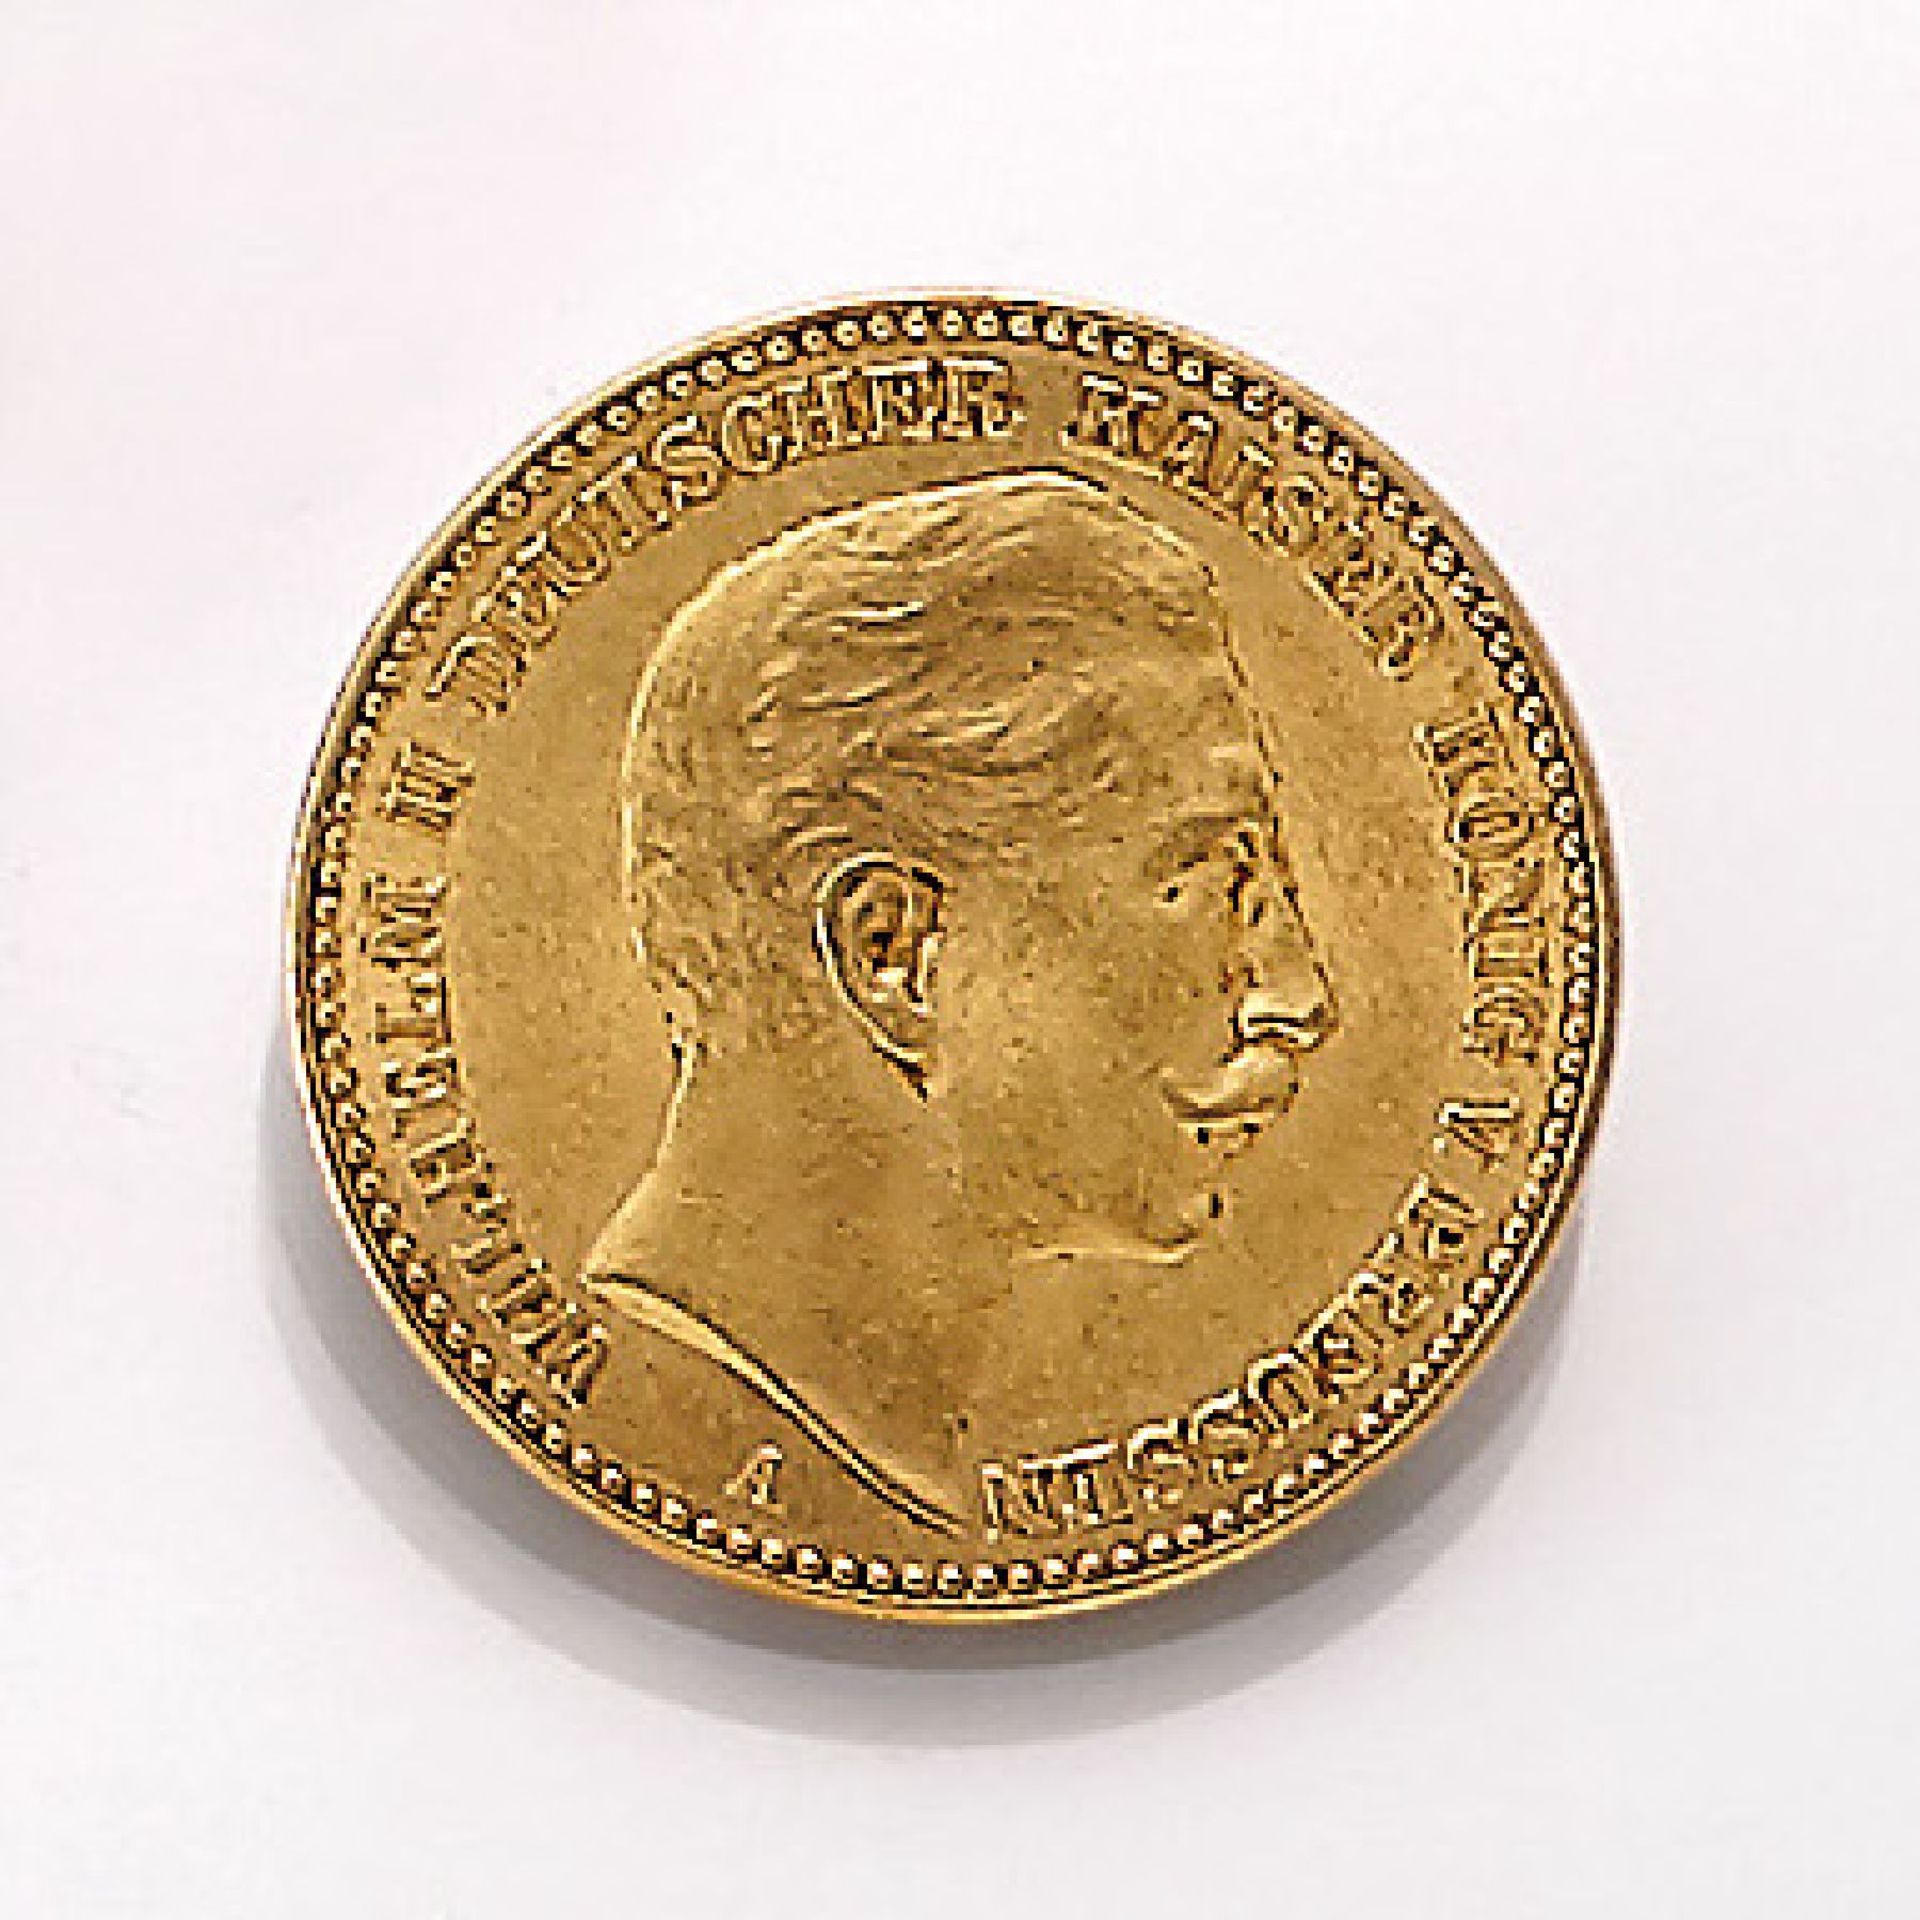 Goldmünze 20 Mark 1912, Wilhelm II., Deutscher Kaiser, König von Preussen, Prägeort AGold coin 20